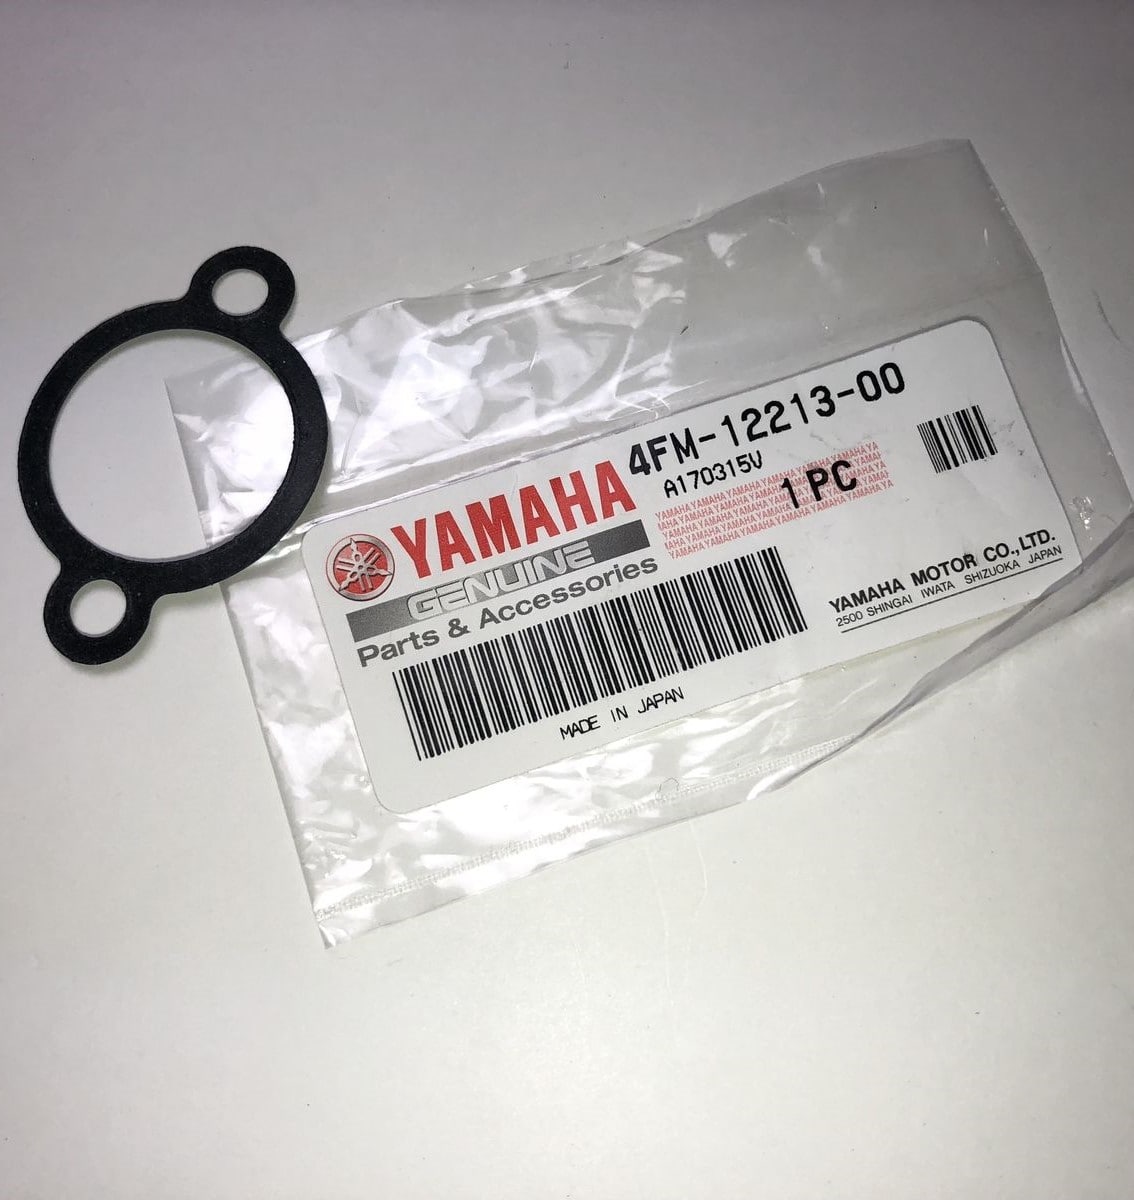 Yamaha Tensioner Case Gasket FX 140/FX 140 Cruiser 4FM-12213-00-00 SBT 42-408-37 